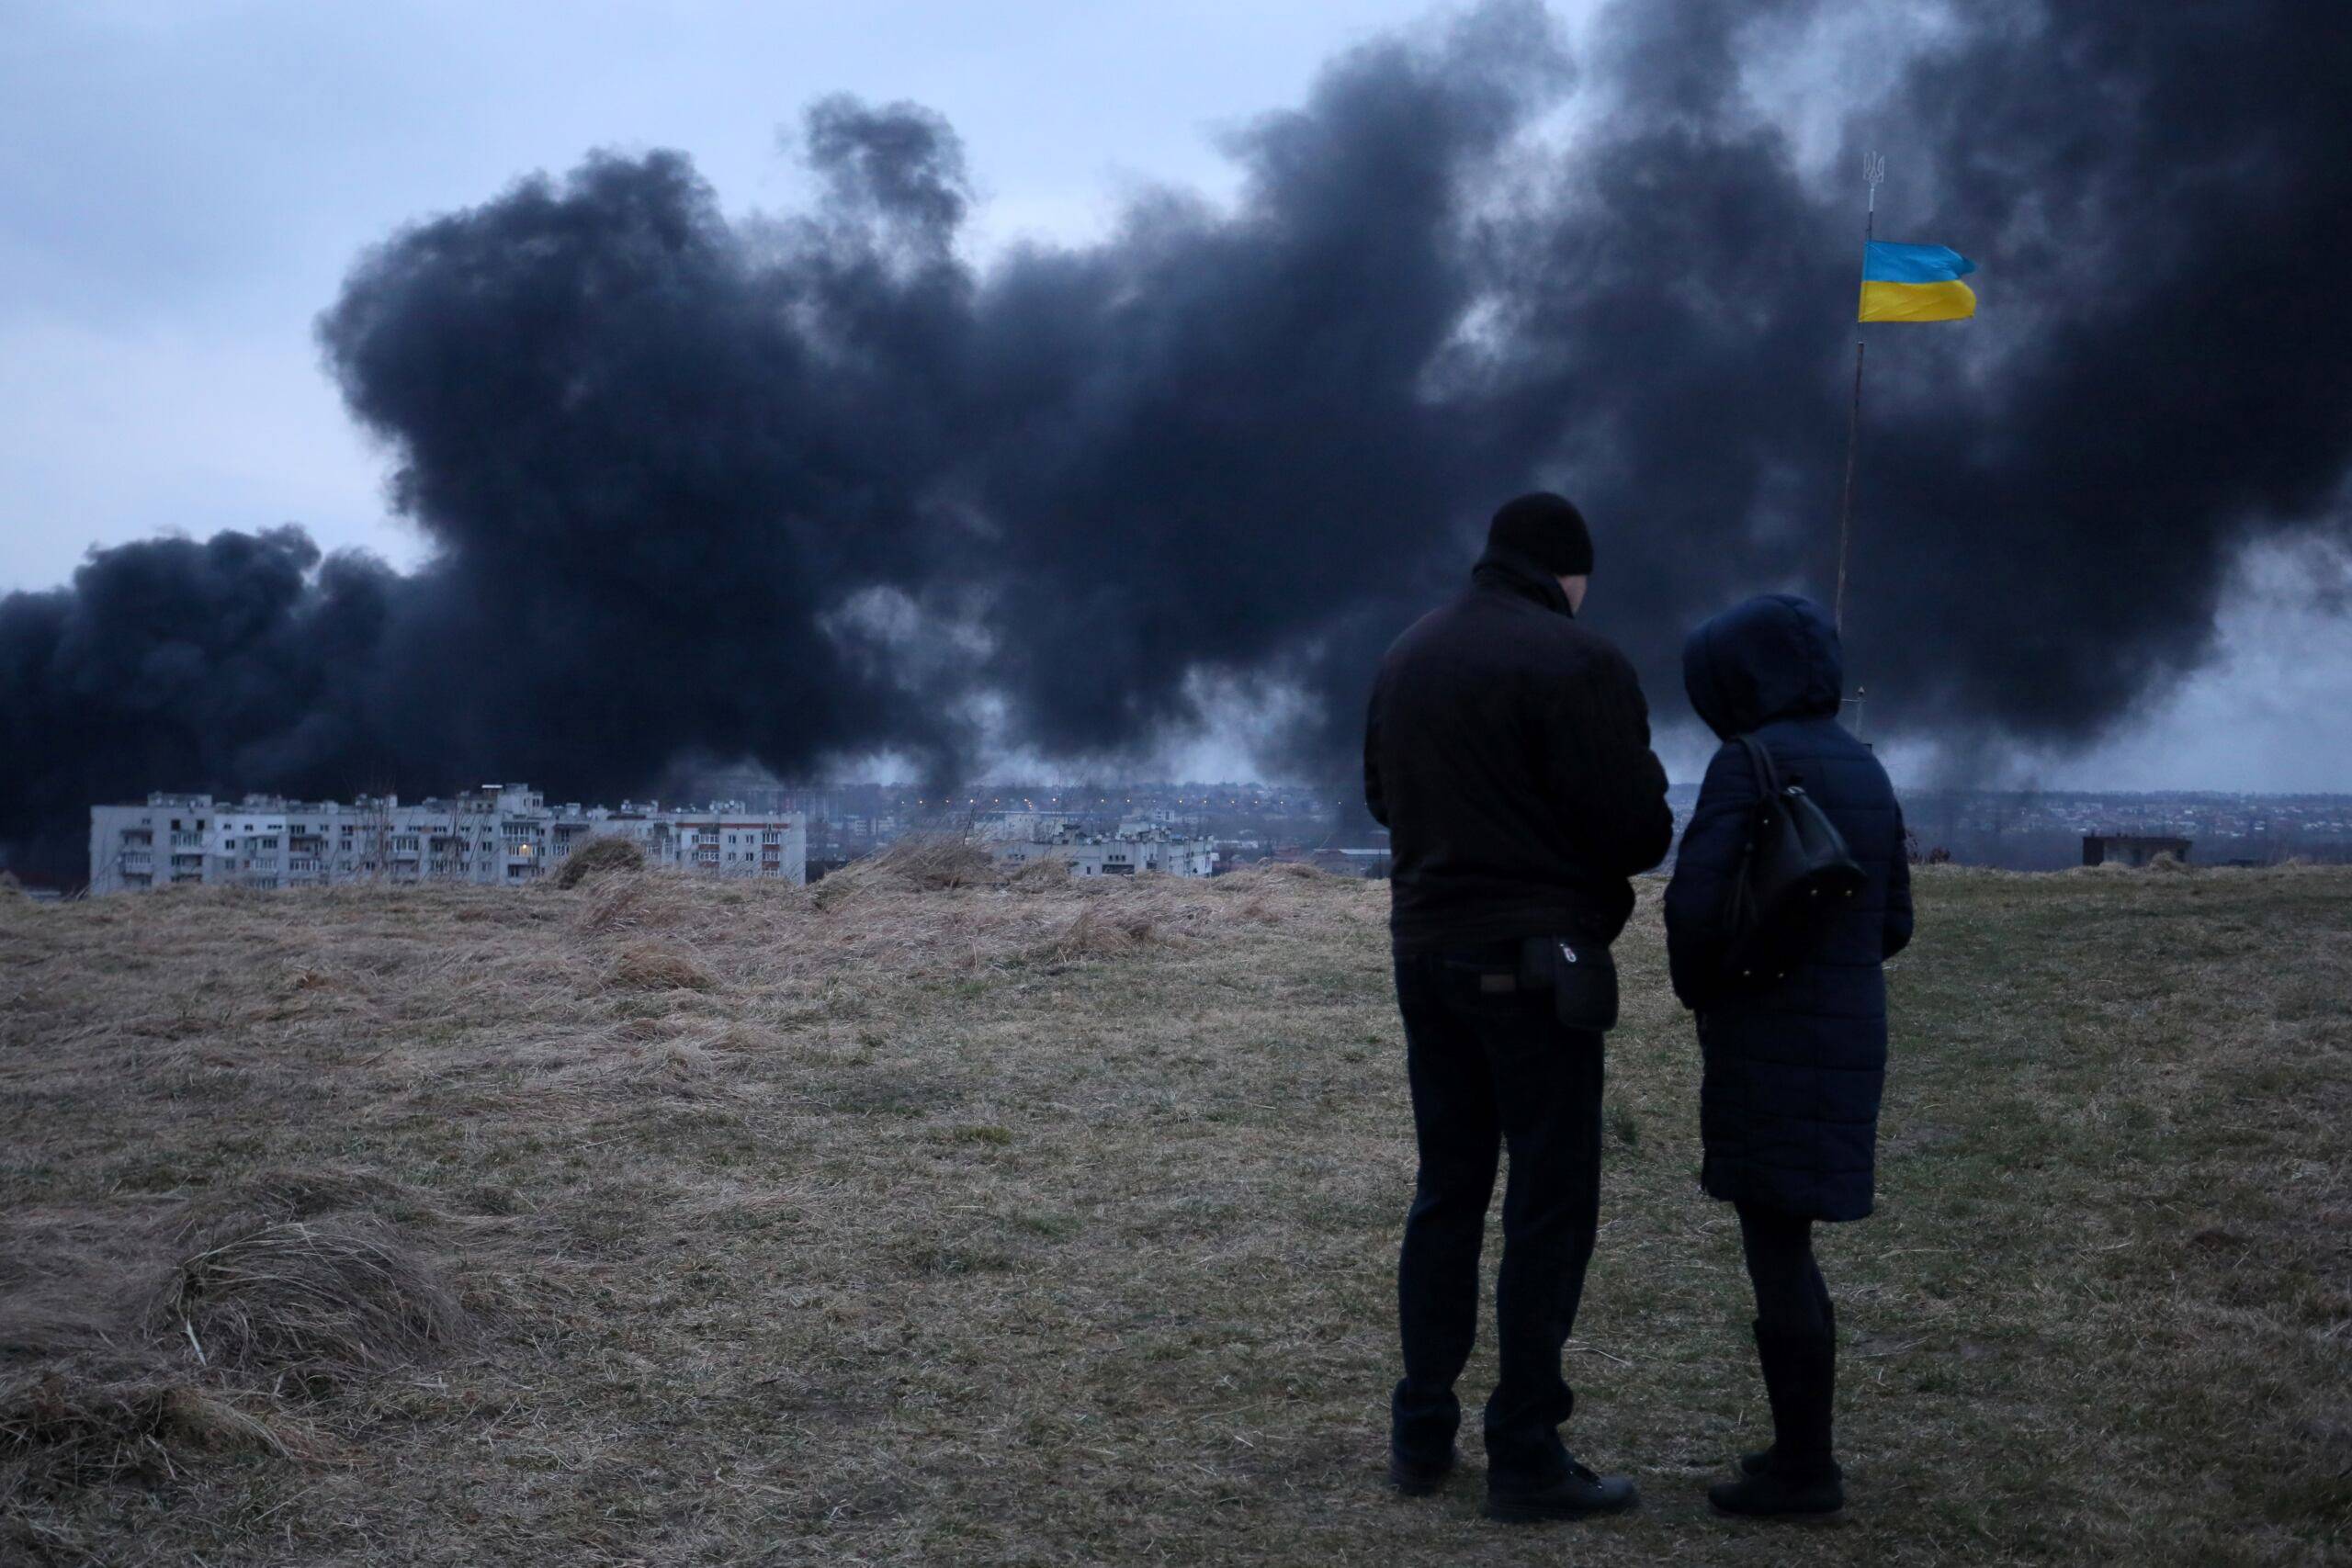 Ukraina, Lwów, 26.03.2022. Dym z płonących magazynów paliwa. Na pierwszym planie dwie postaci i flaga Ukrainy